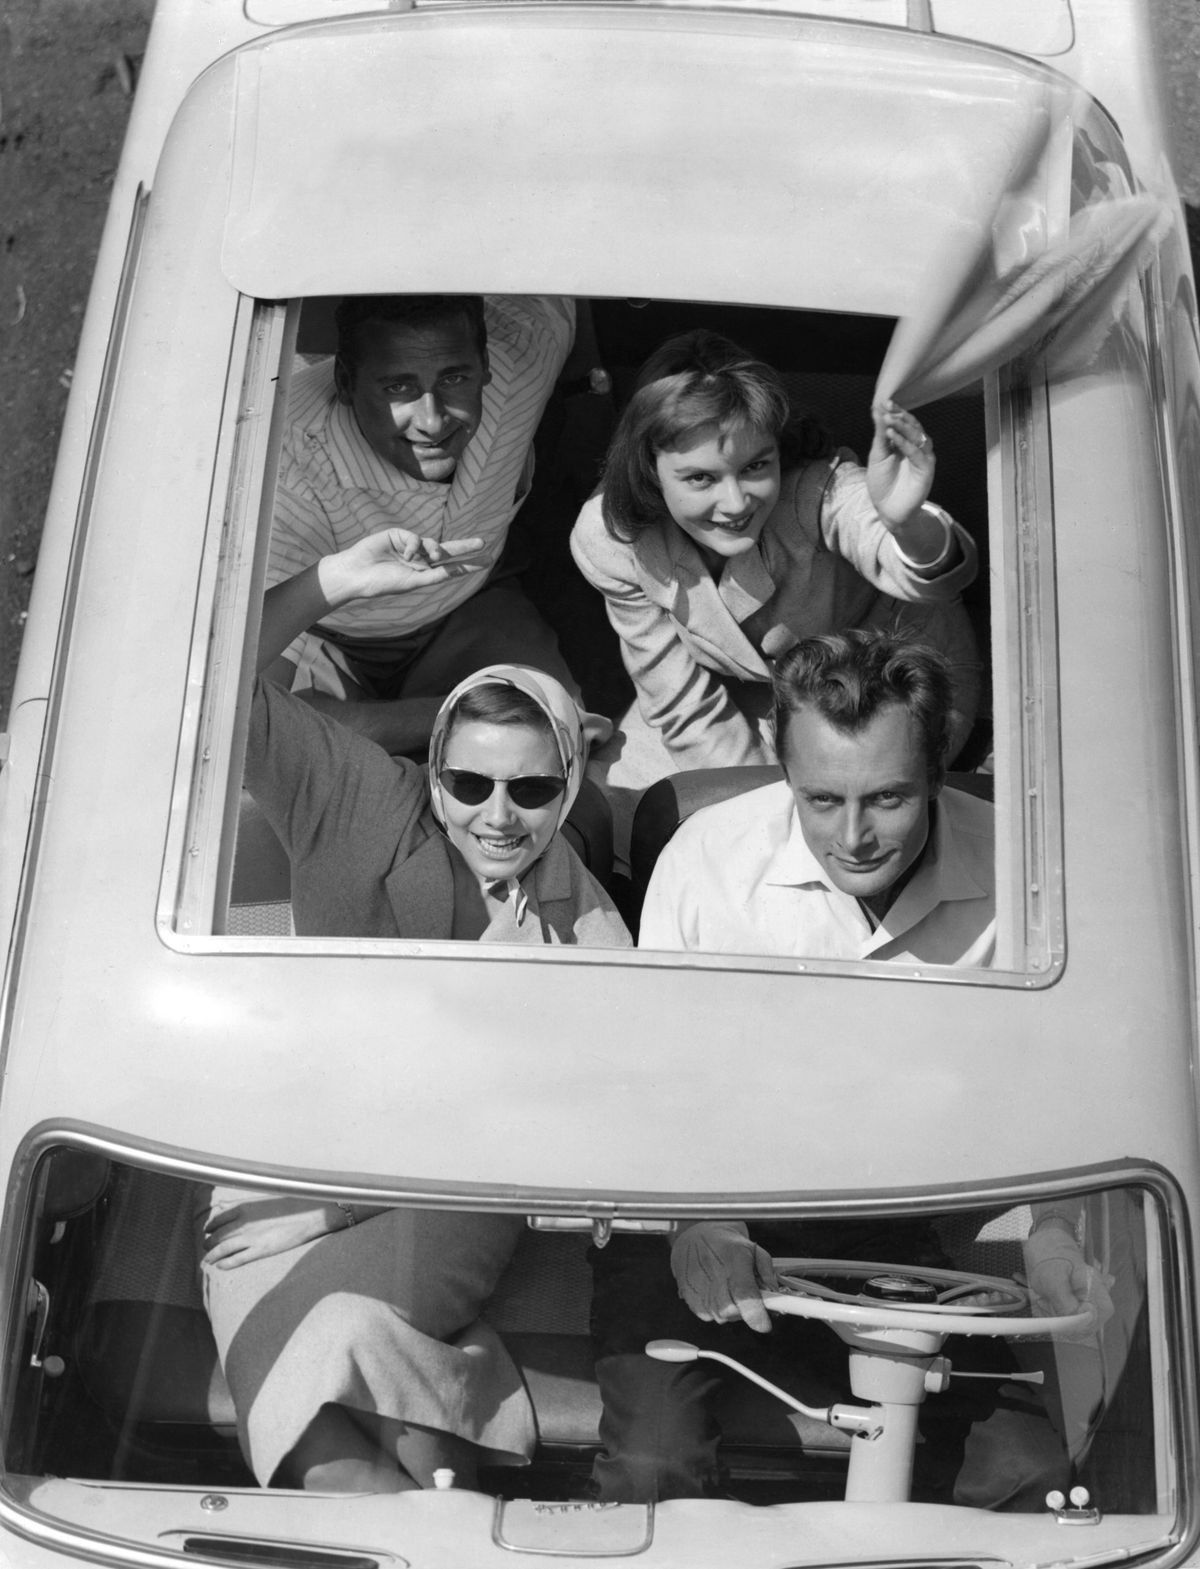 những người trẻ tuổi vẫy tay chào từ mui xe mui trần vào những năm 1950